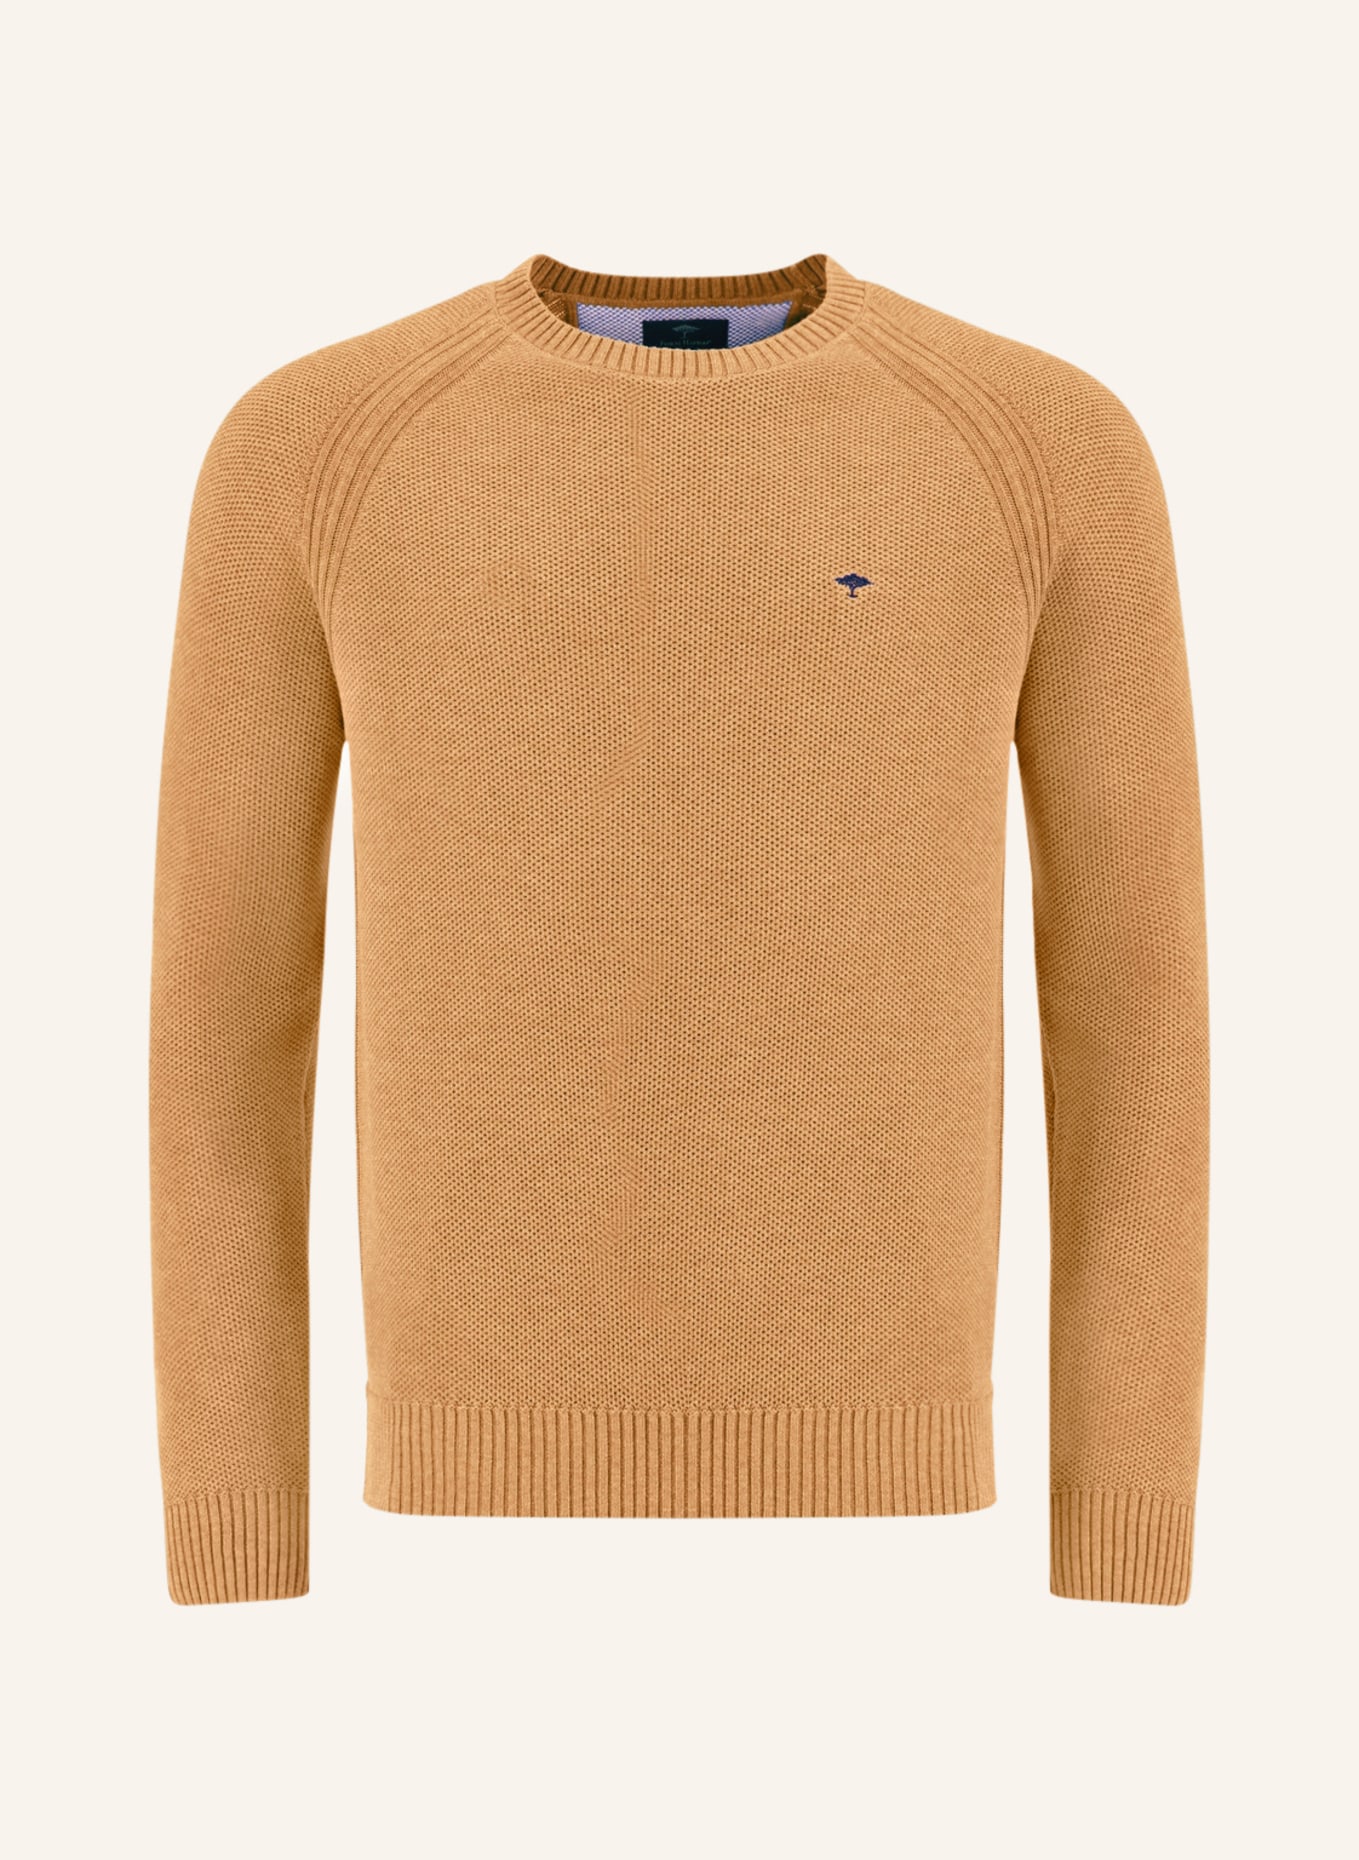 FYNCH-HATTON Pullover, Farbe: CAMEL (Bild 1)